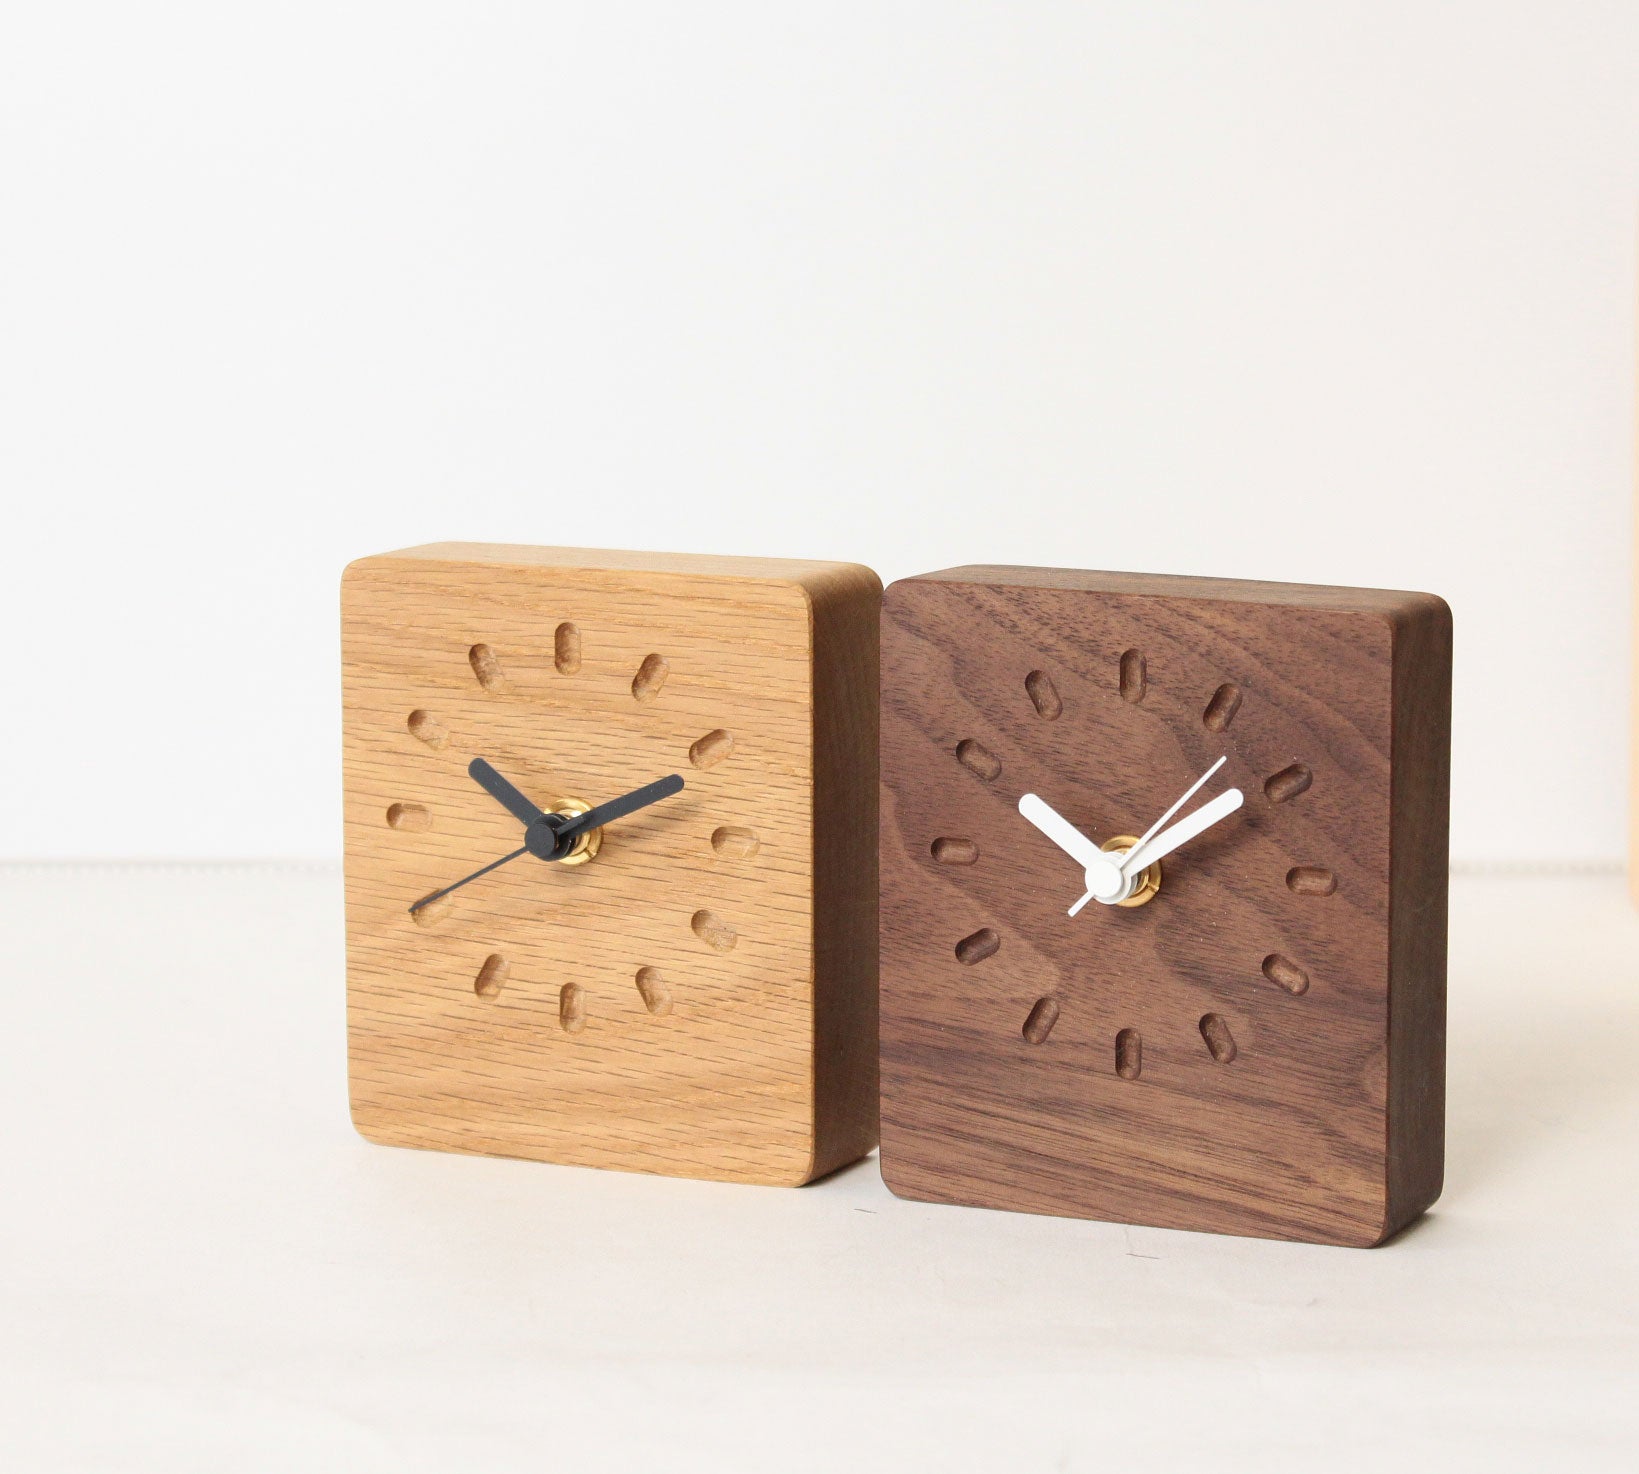 売れ筋 Latree 小さい時計2ピット オーク 置き時計 リビング 30mm厚 天然木オーク材 ダイニング 無垢材 木製 北欧 ギフト アンティーク  置き時計 おしゃれ インテリア かわいい シンプル 置き掛け兼用時計